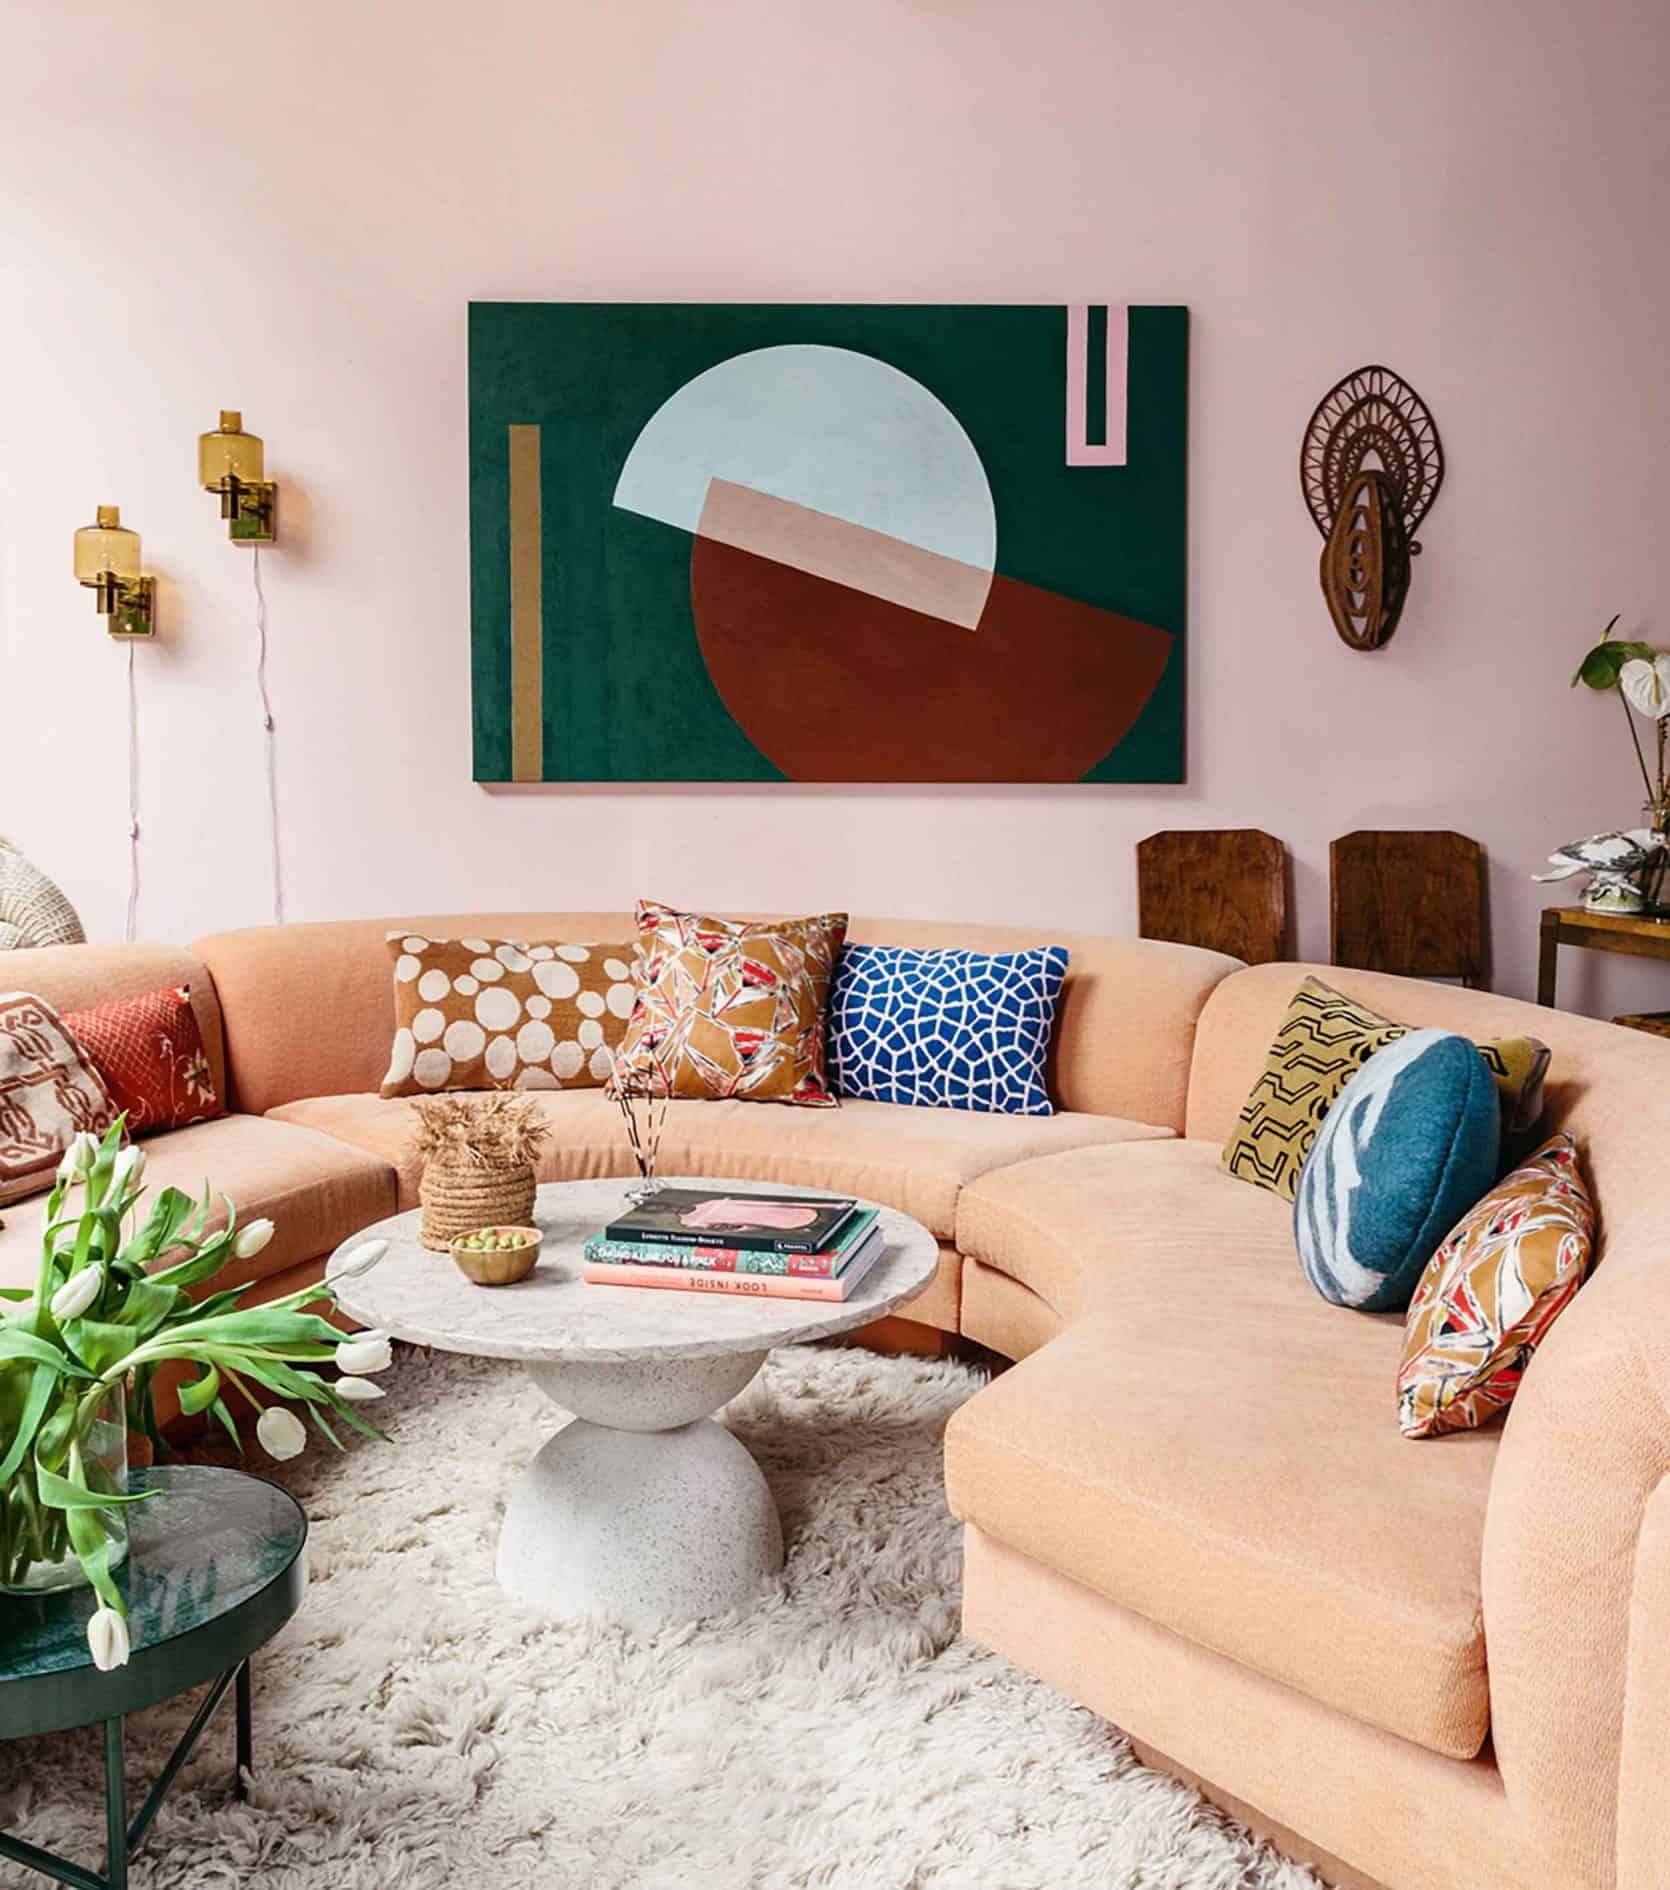 Sofa cong màu cam nhạt trở thành nơi để những chiếc gối tựa đủ sắc màu và họa tiết 'khoe sắc'. Tổng thể phòng khách này cũng rất sống động, tươi vui nhờ sự góp mặt của sắc màu trẻ trung, phong phú.